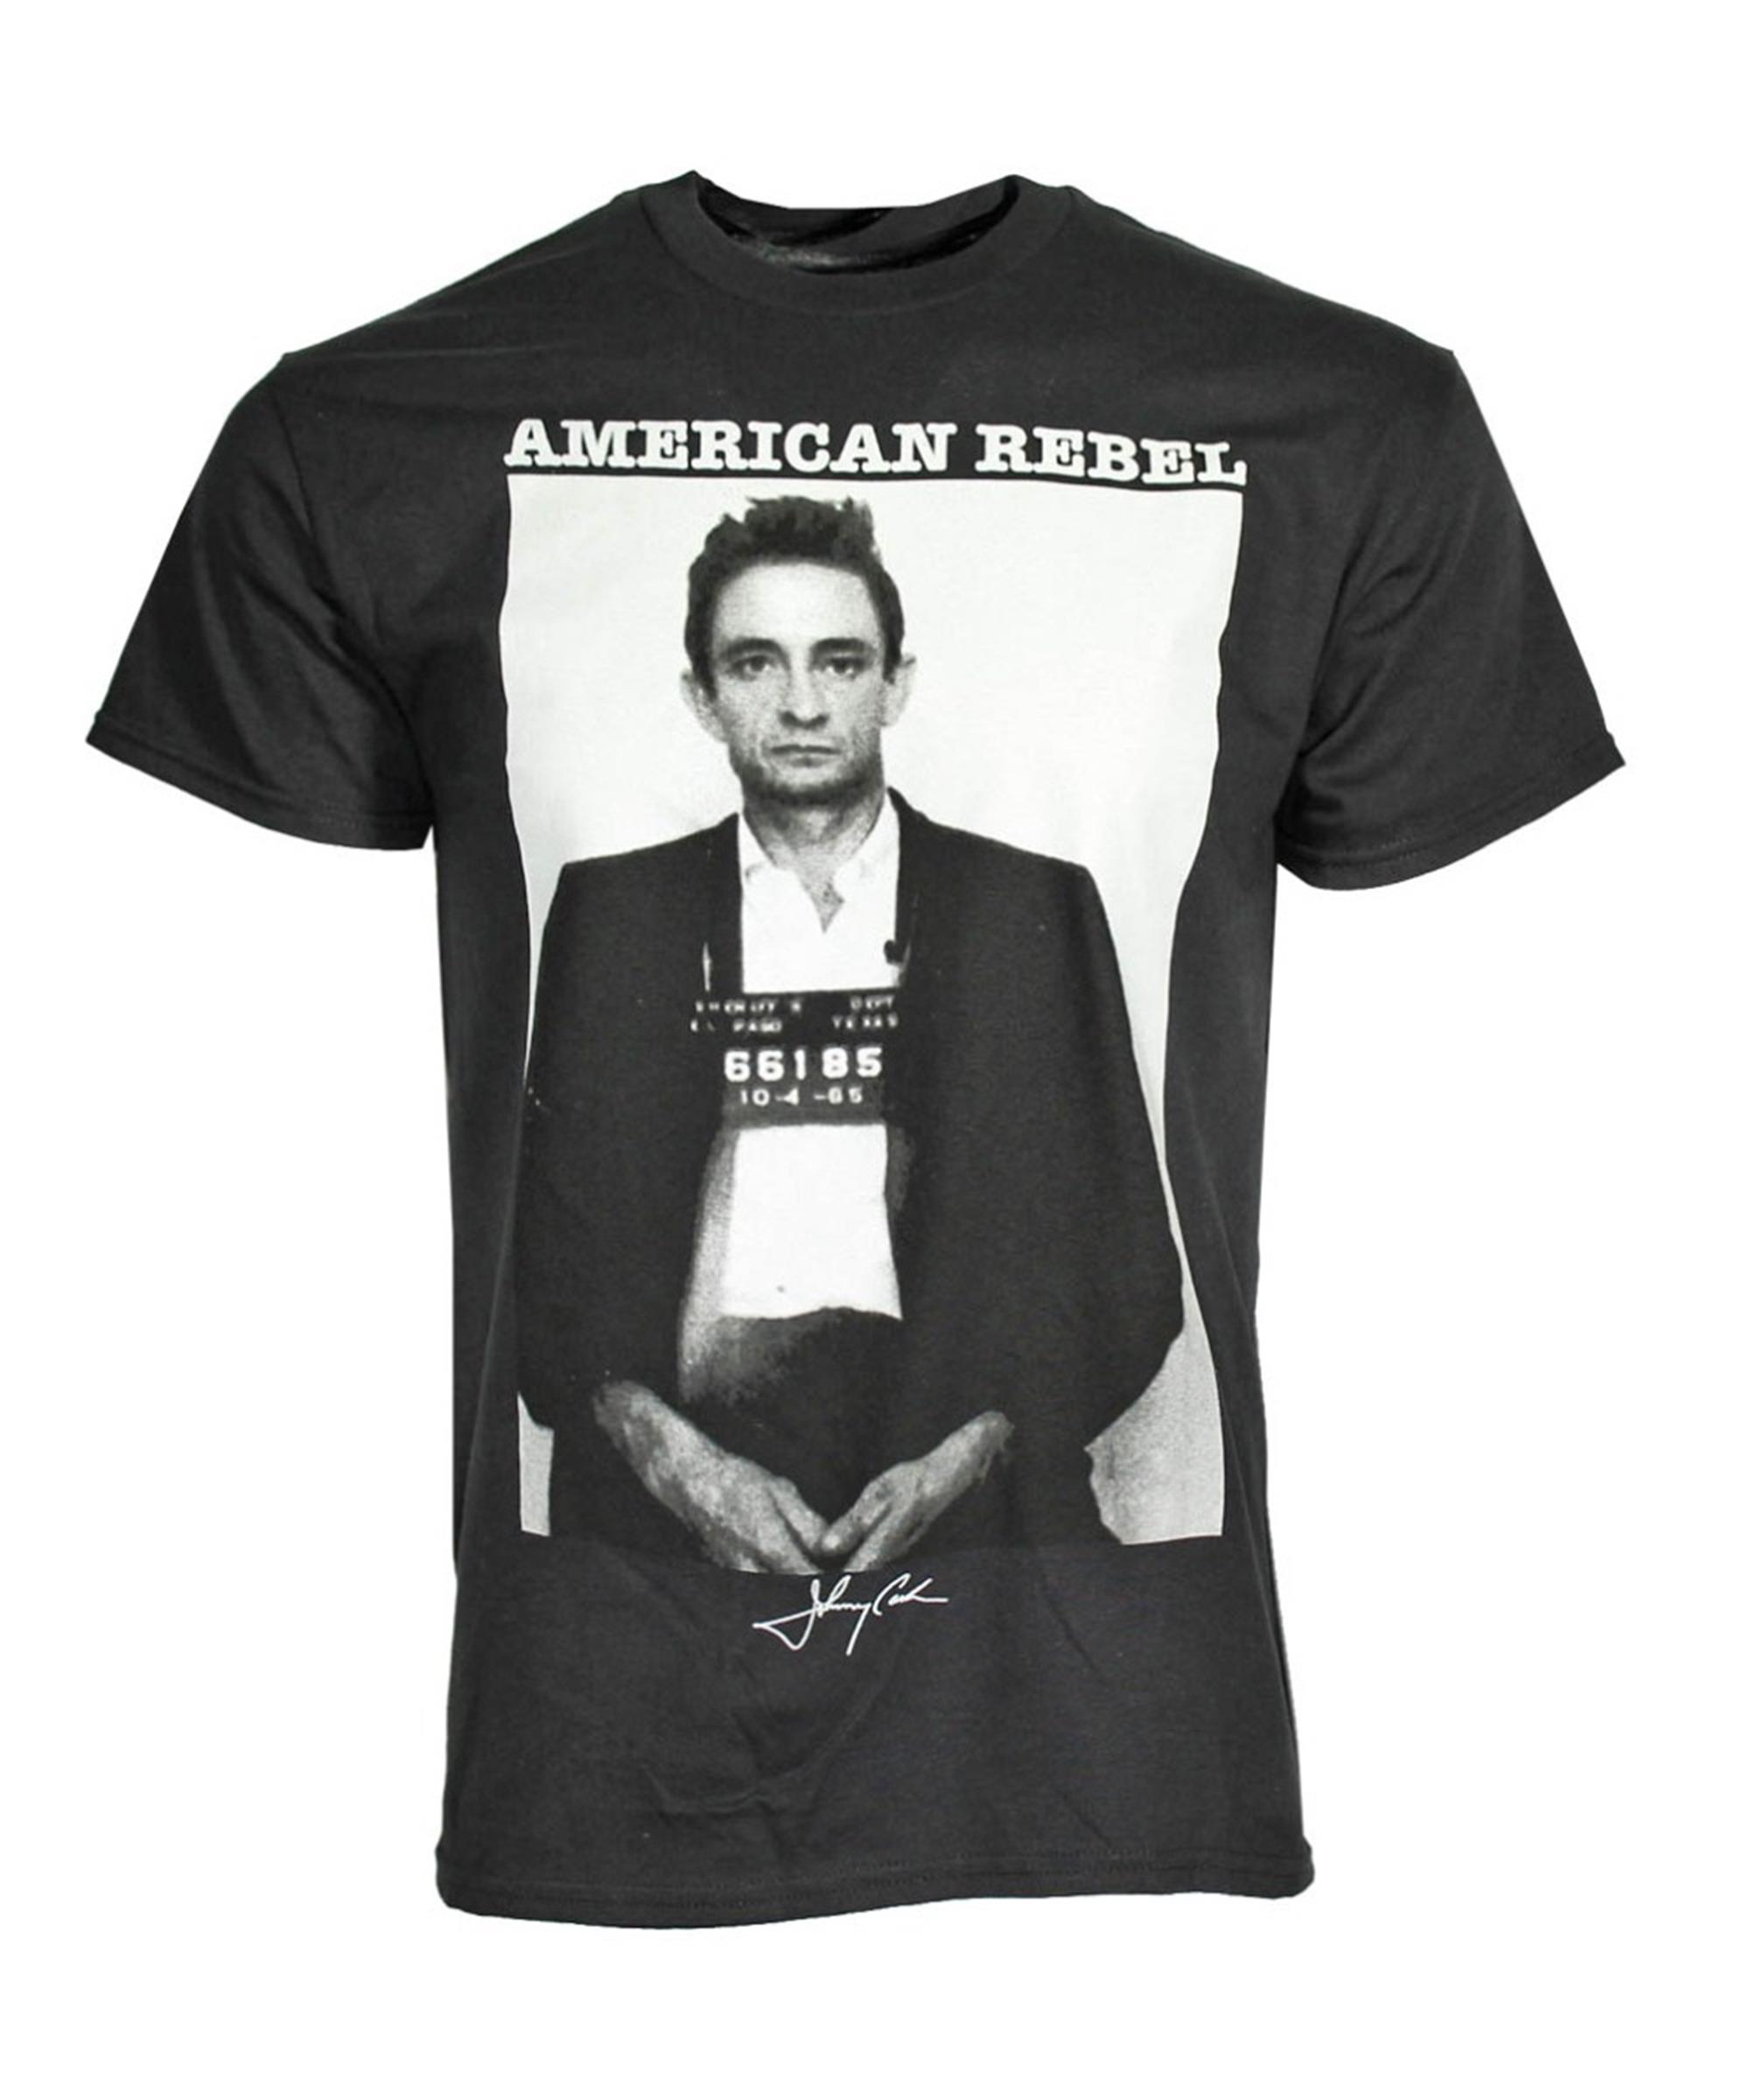 Johnny Cash Mug Shot T-Shirt